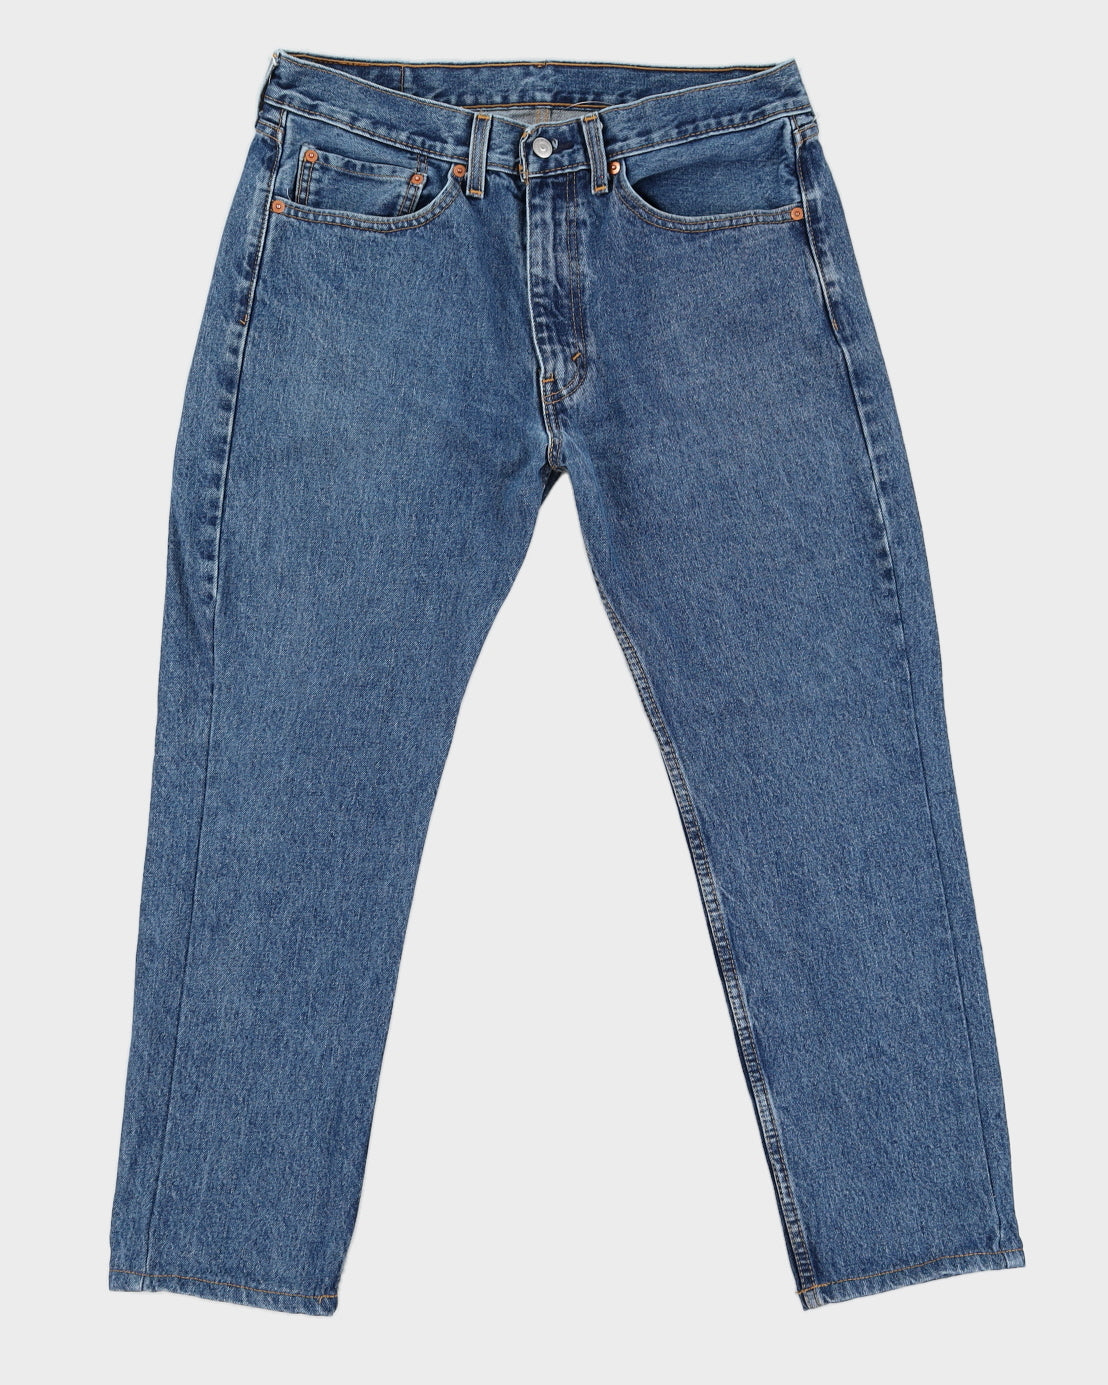 Levi's 505 Medium Wash Blue Denim Jeans - W34 L29